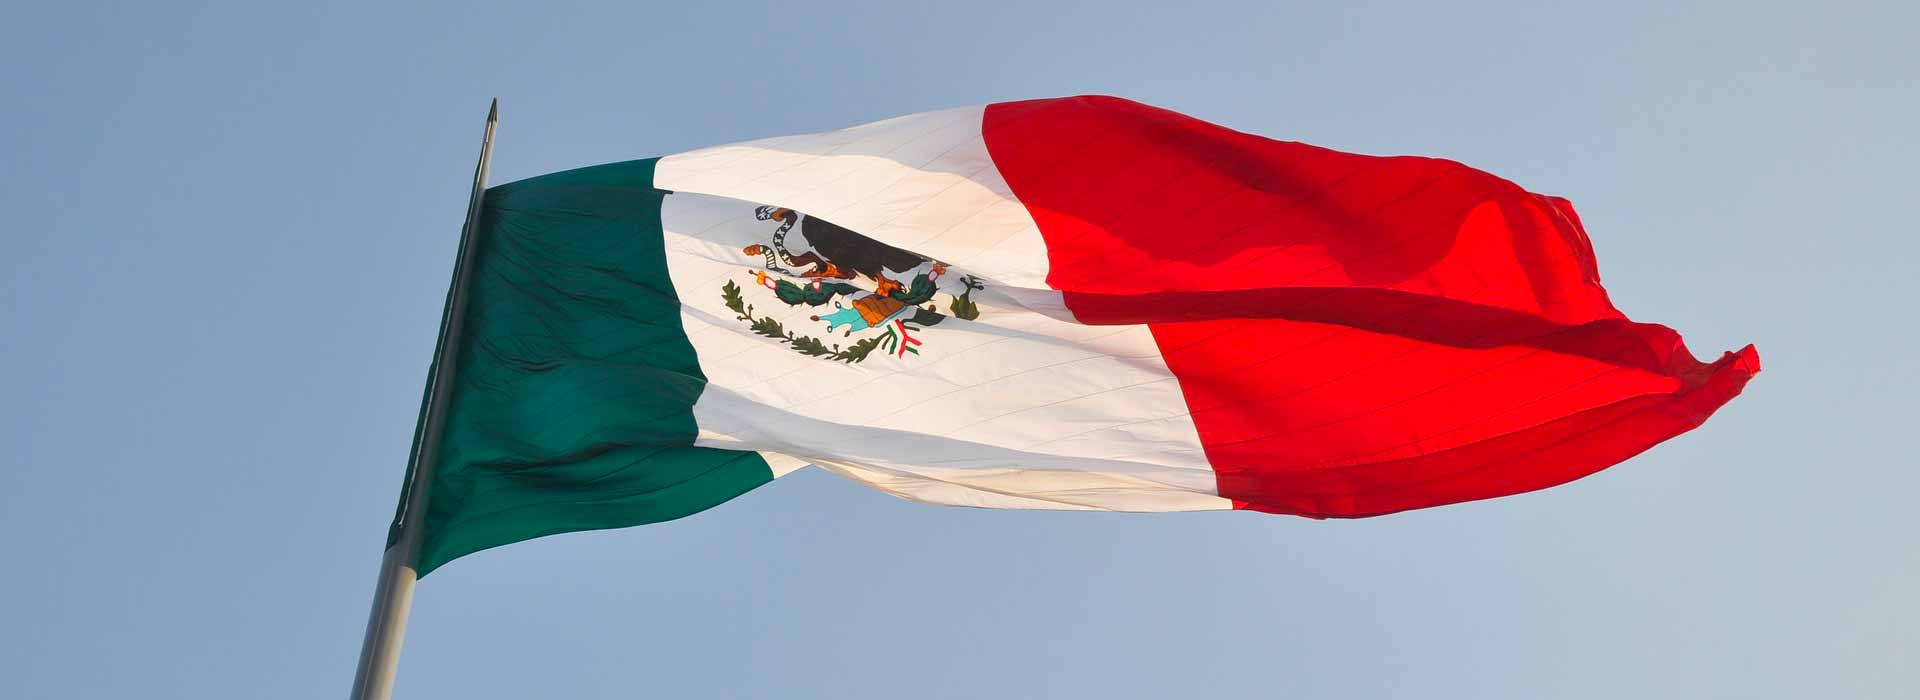 Messico: crescita più bassa, rischi persistenti